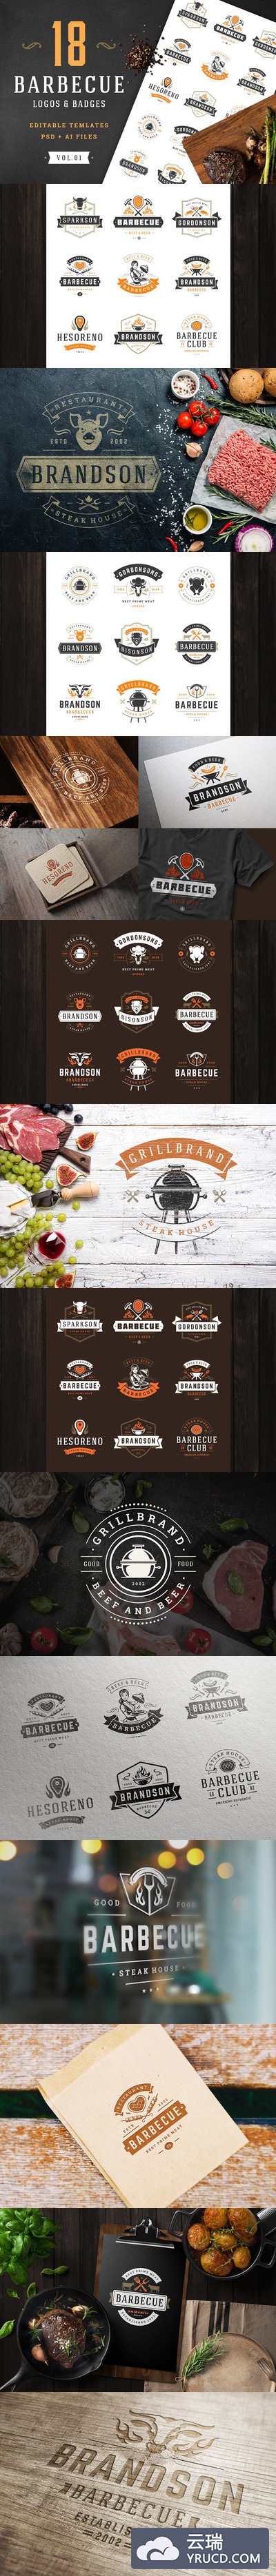 18个烧烤标志和徽章 18 Barbecue Logos and Badges